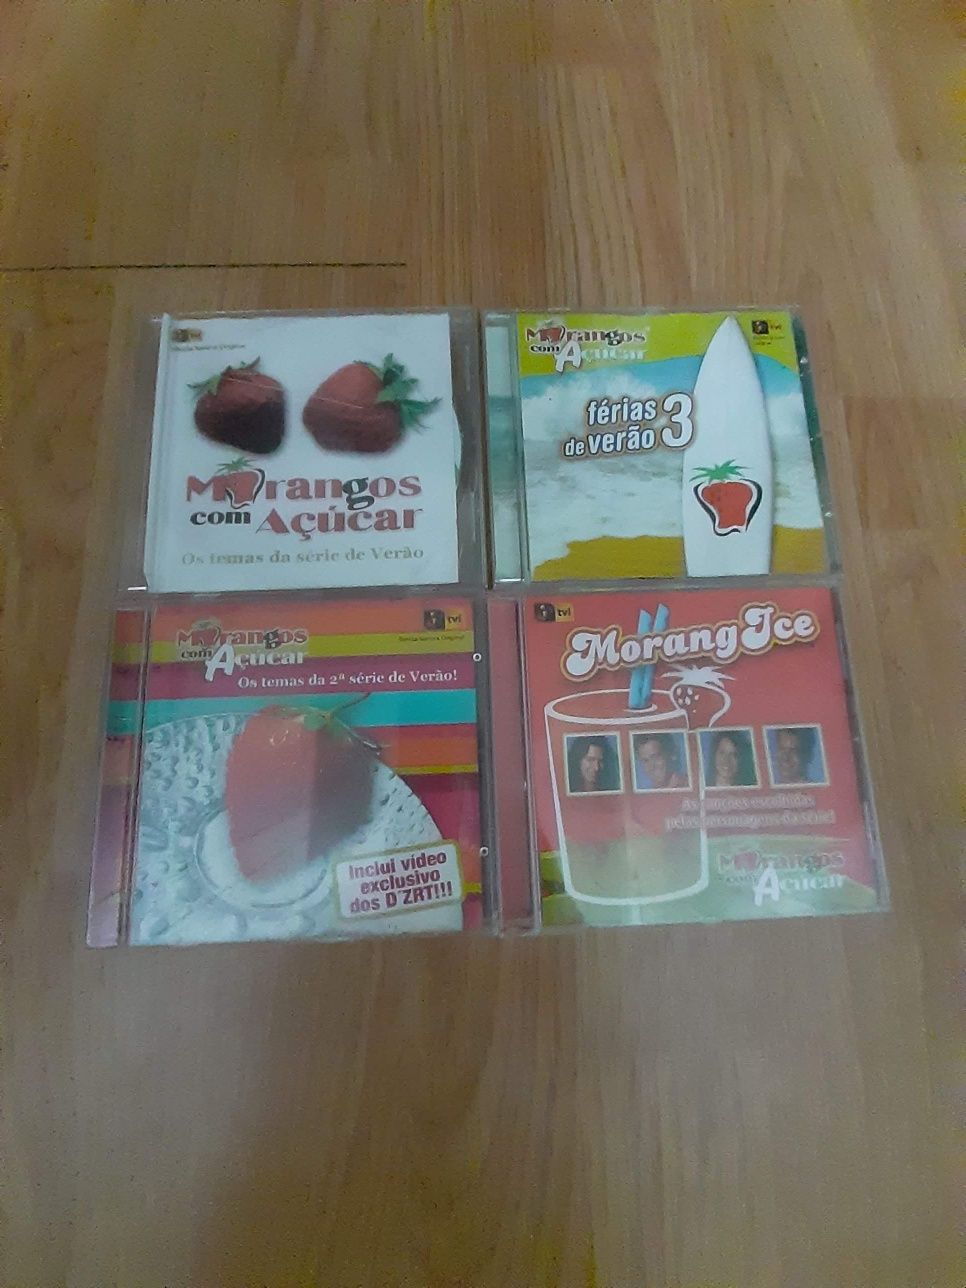 4 CDs Morangos com Açúcar- vendo ou troco